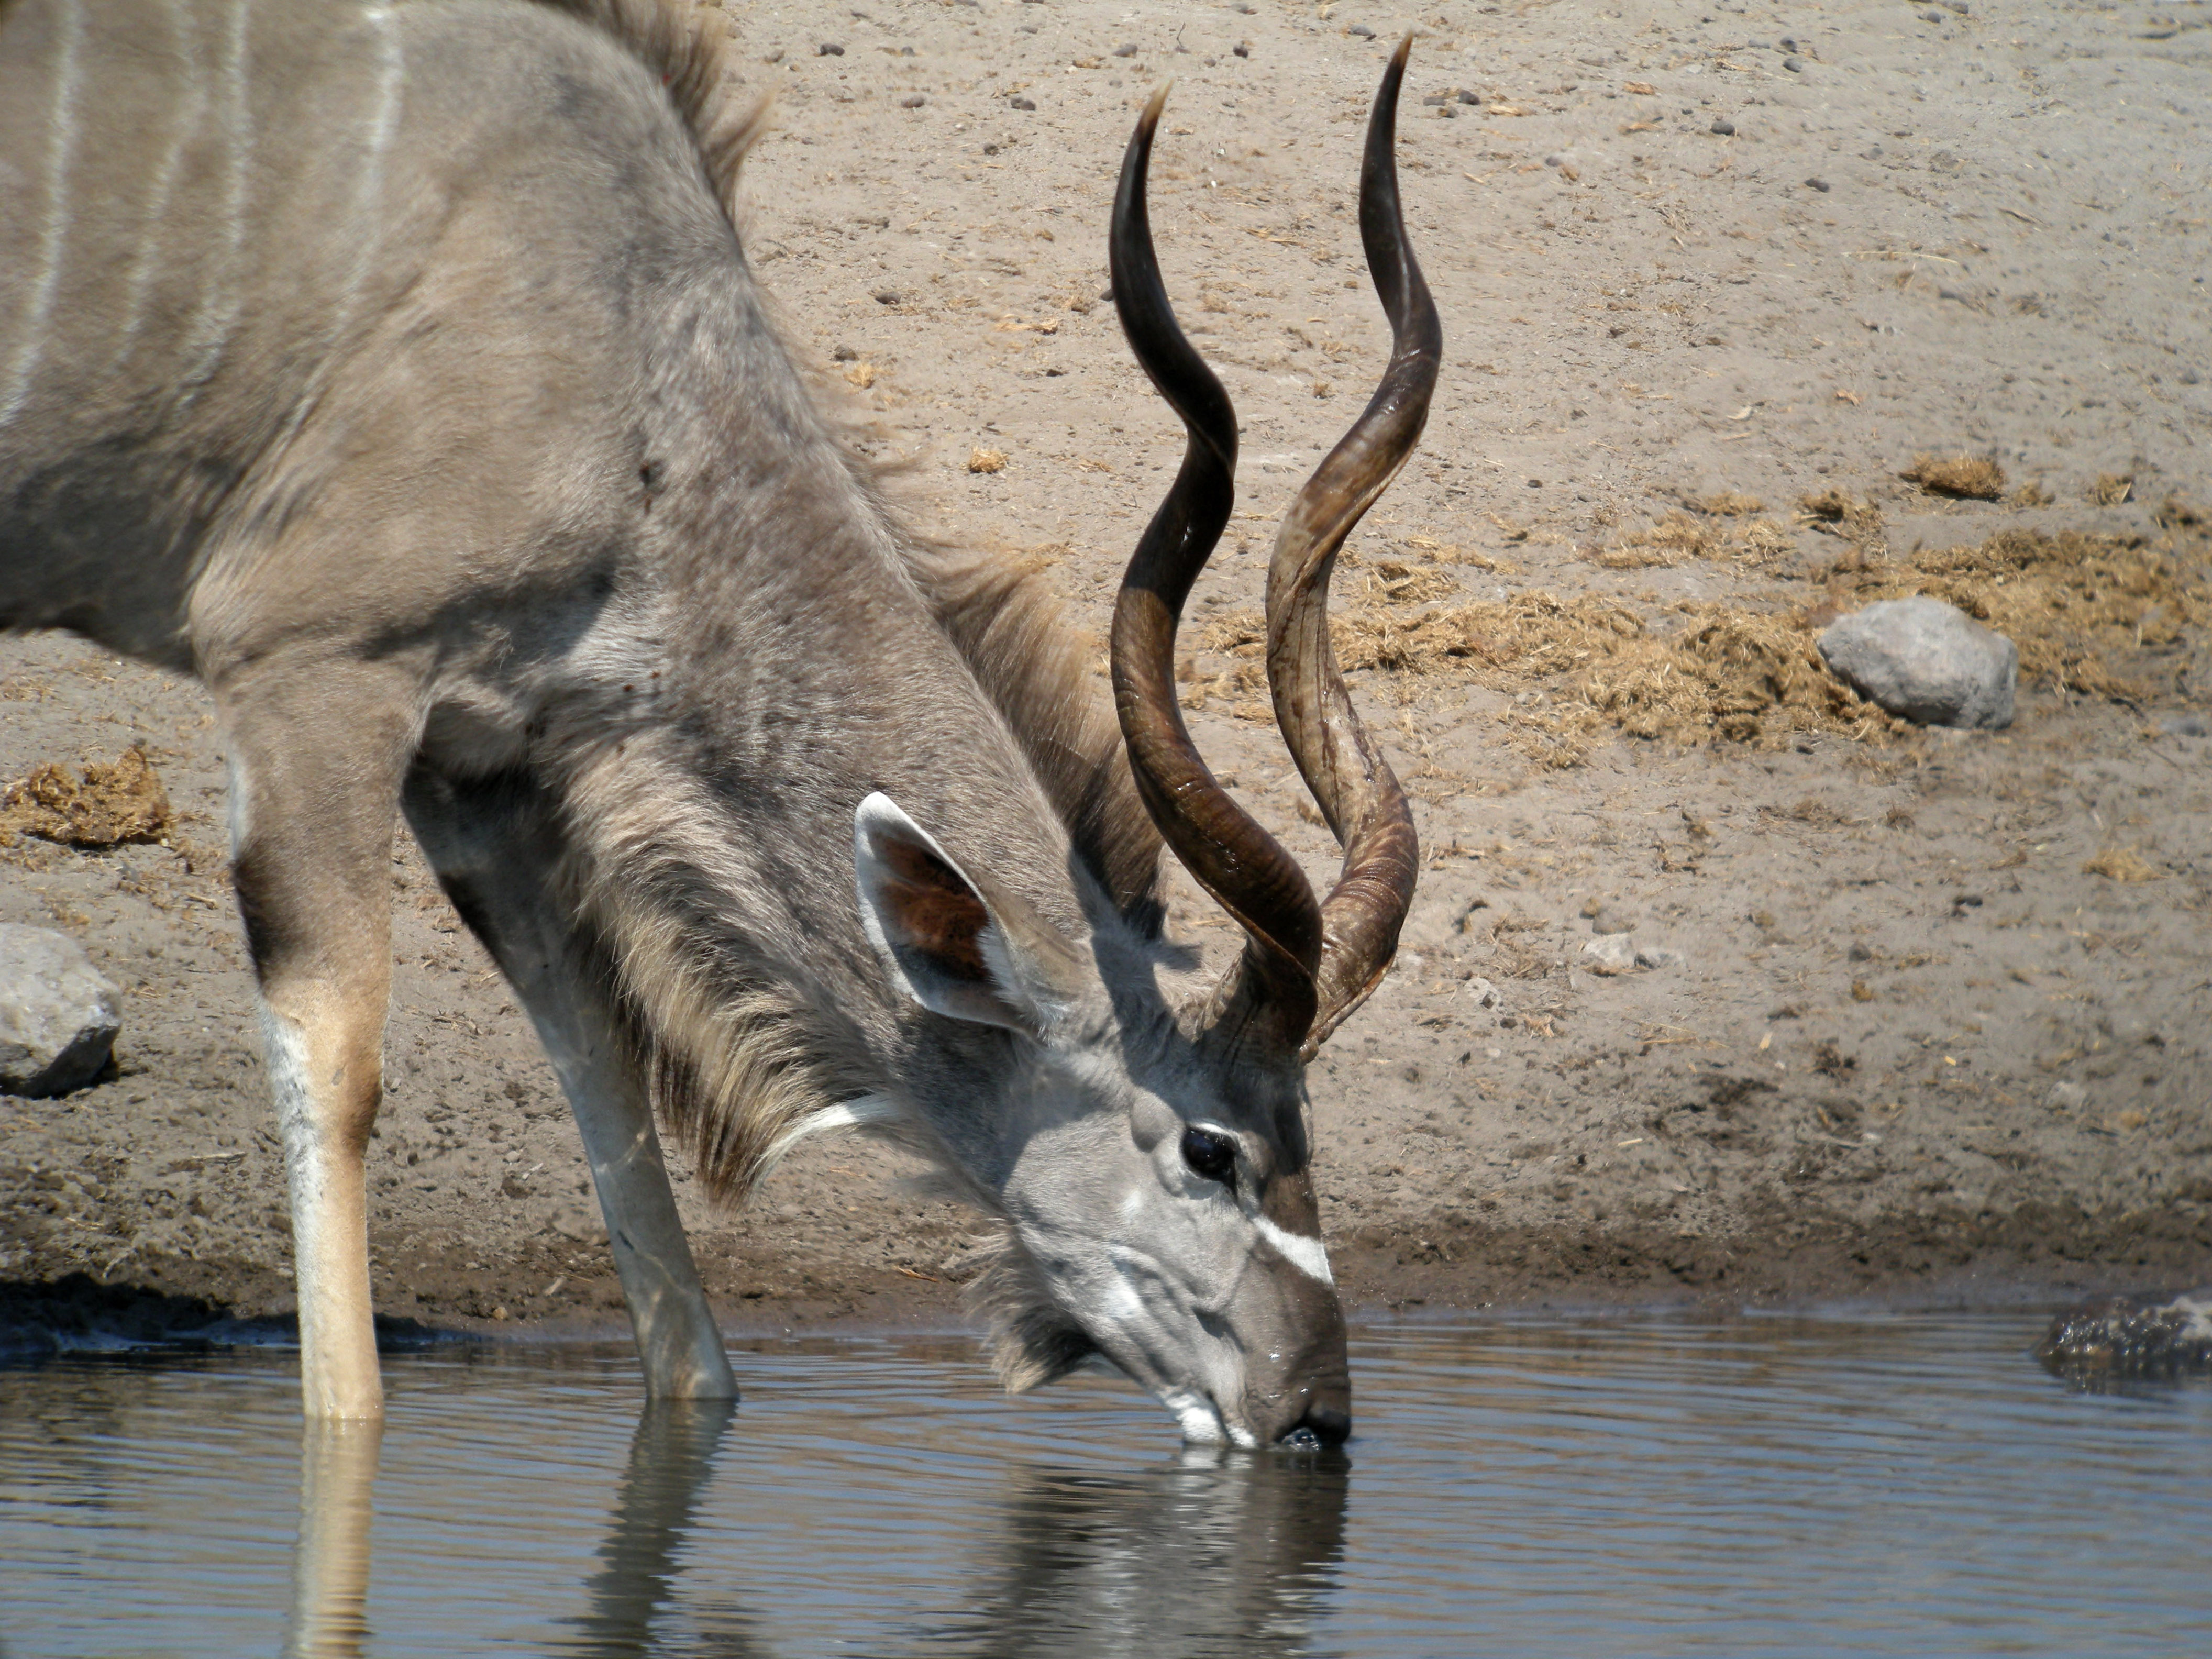 Greater_Kudu,_Etosha_National_Park,_Namibia_2.jpg